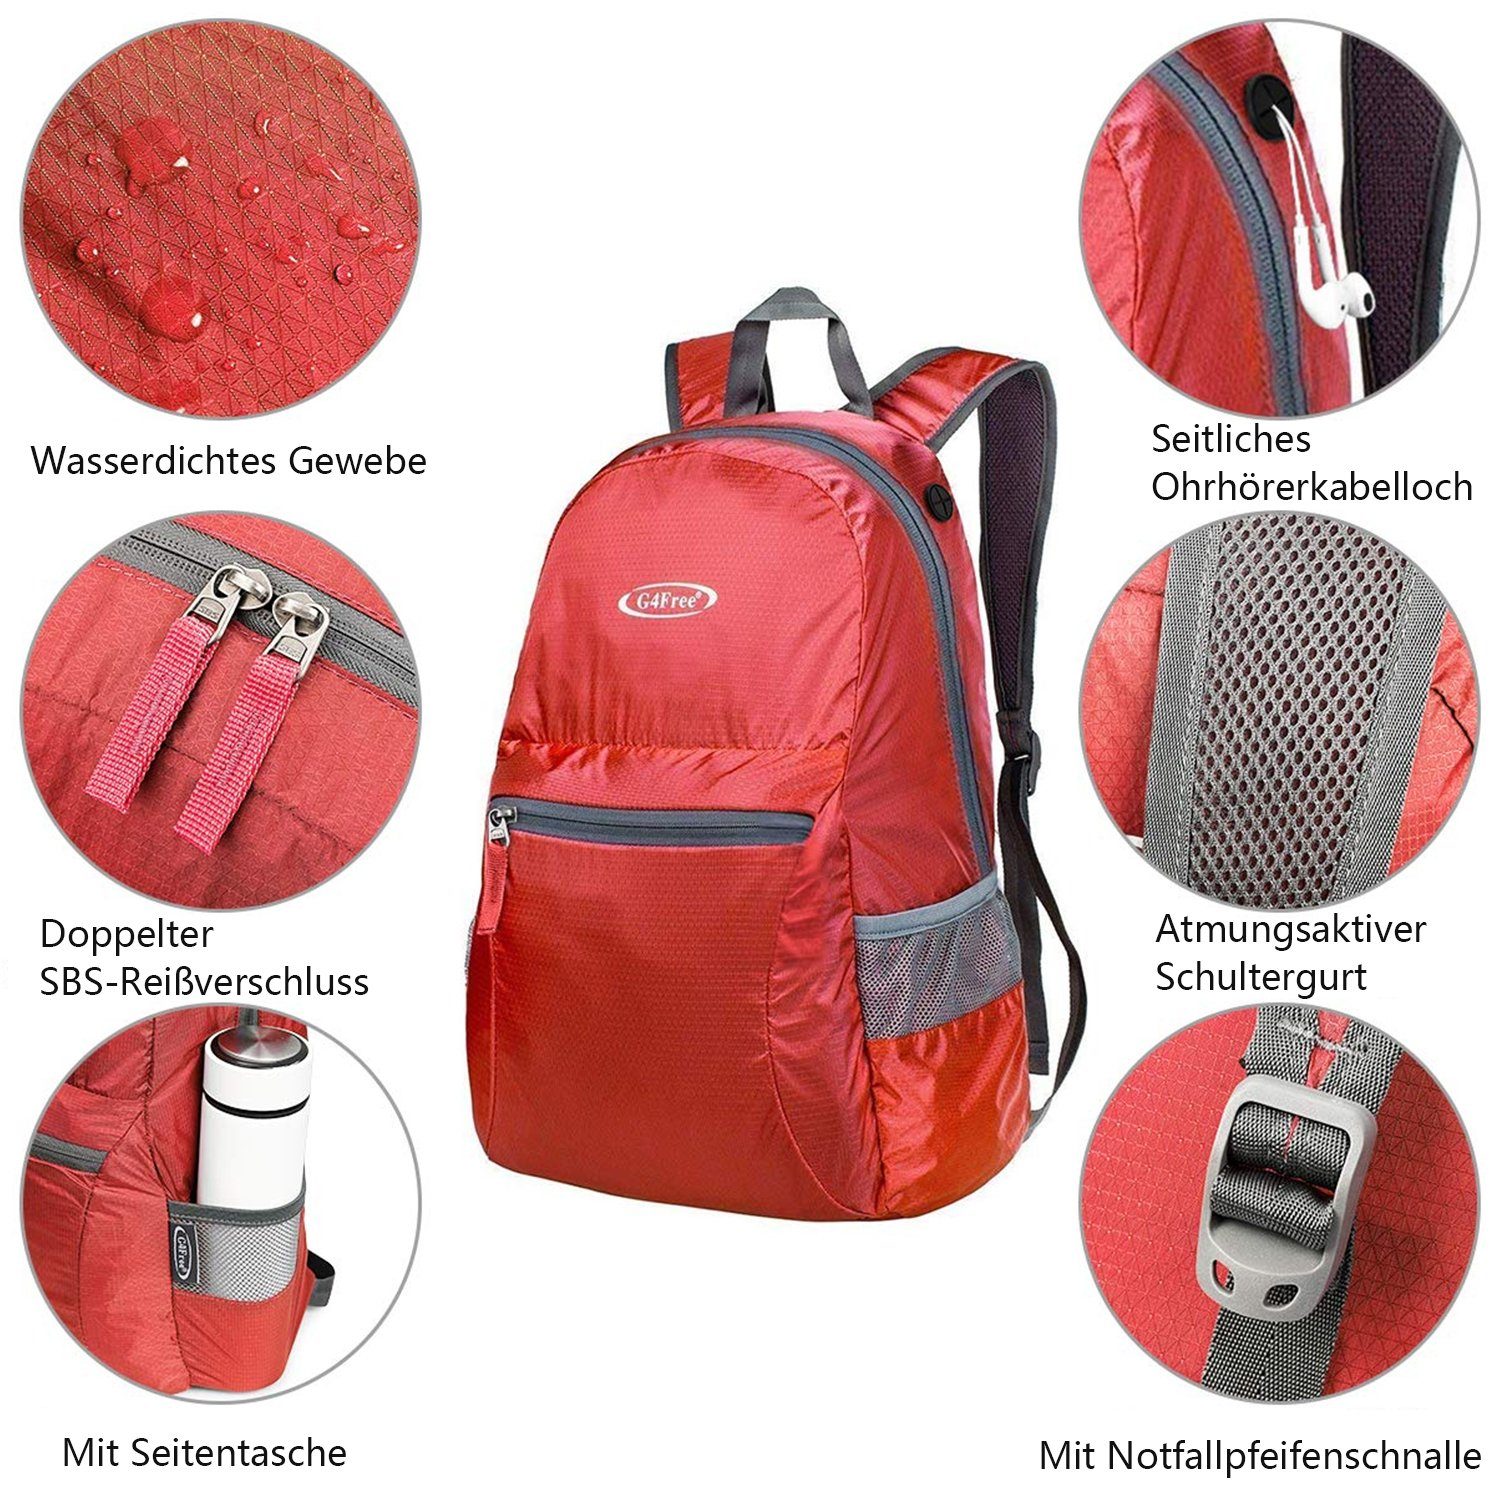 G4Free Freizeitrucksack, 20L Rot Wanderrucksack Ultraleichter Daypack Faltbarer